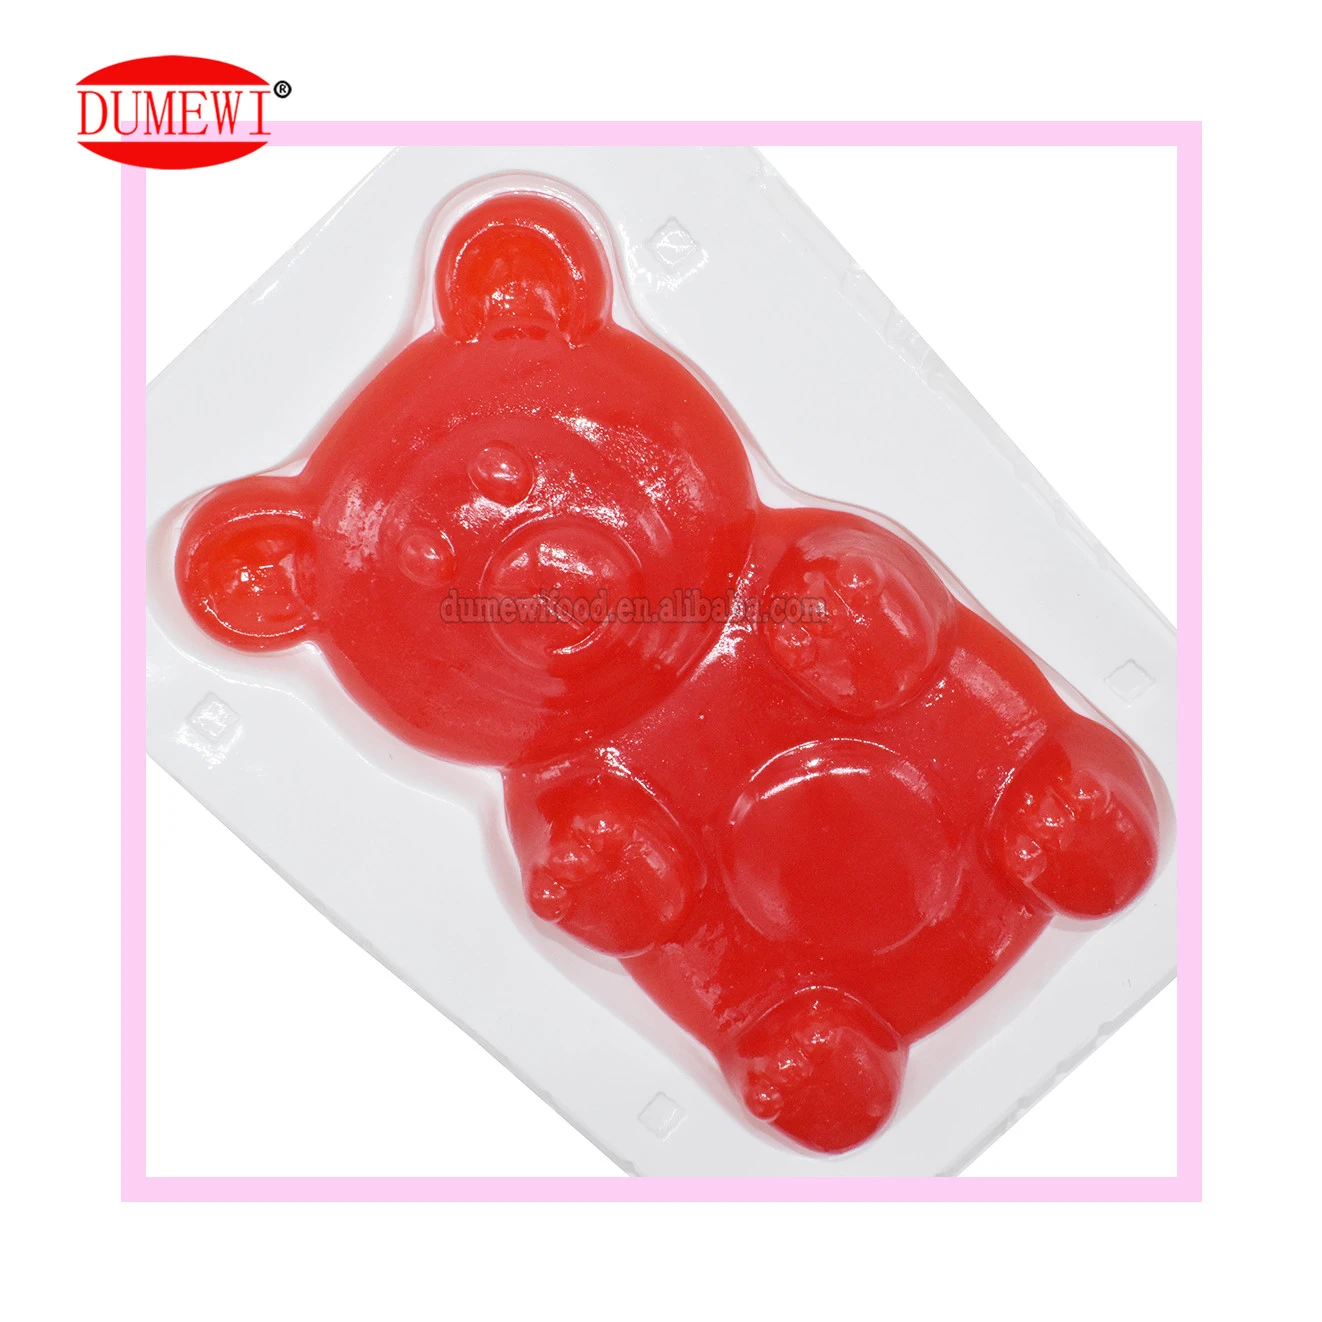 https://img2.tradewheel.com/uploads/images/products/5/7/super-big-gummy-candy-bear-maker-gummy-candy1-0713565001634128087.jpg.webp